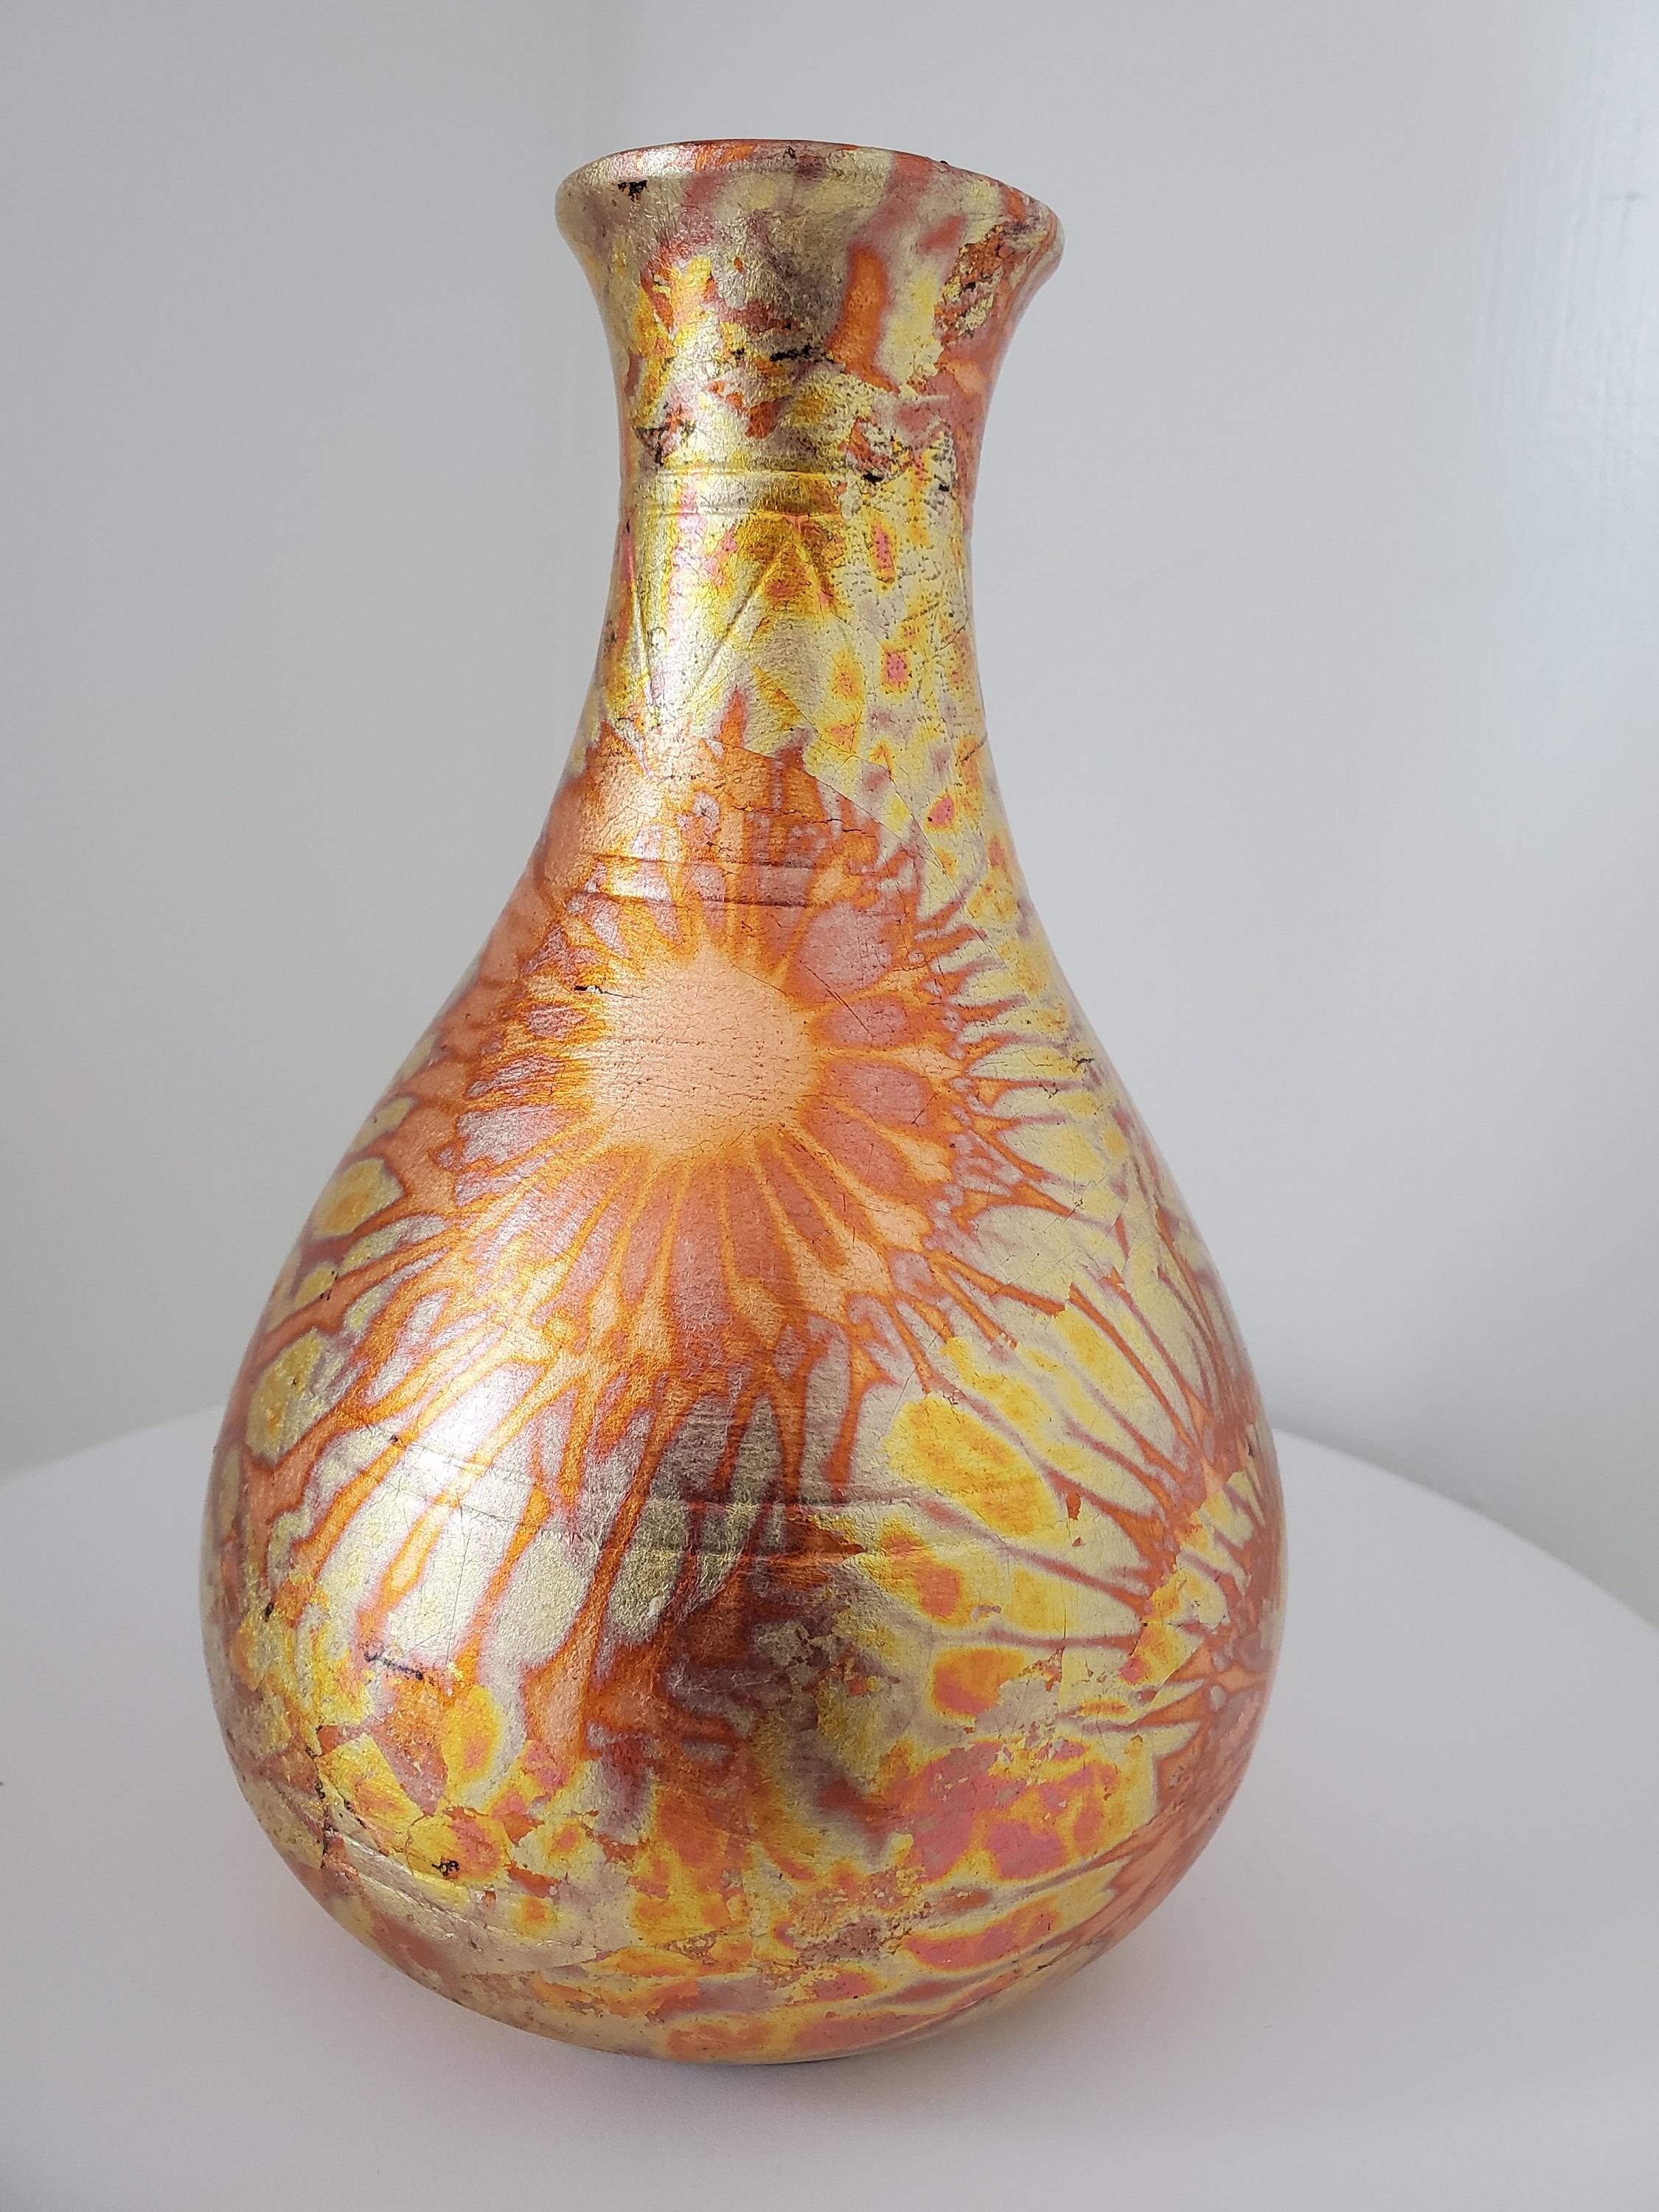 Ce vase en poterie raku de NW Raku Gallery s'intègre parfaitement à tout décor traditionnel ou moderne, tel que l'art déco, la modernité du milieu du siècle ou le style fermier. Ce vase en poterie raku a été fabriqué par le peuple Navajo dans le